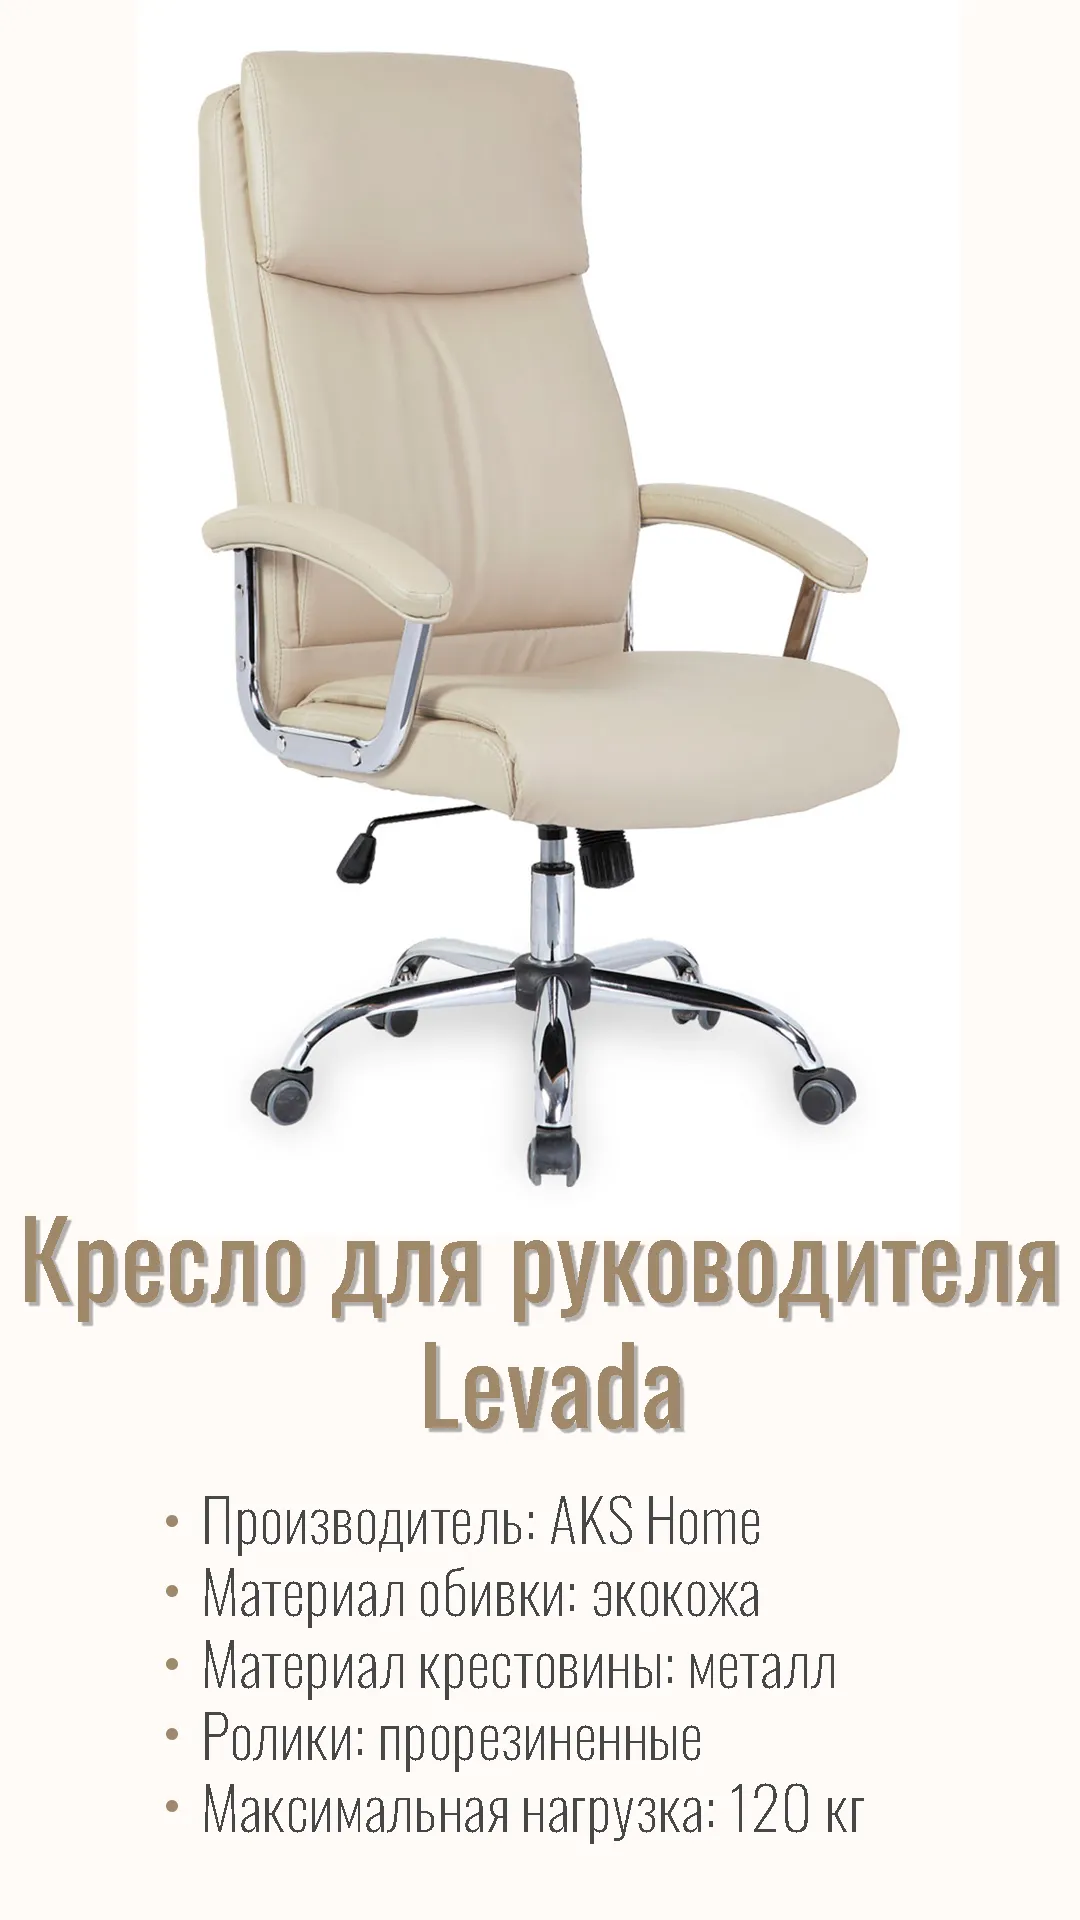 Кресло для руководителя Levada 45601 кремовый